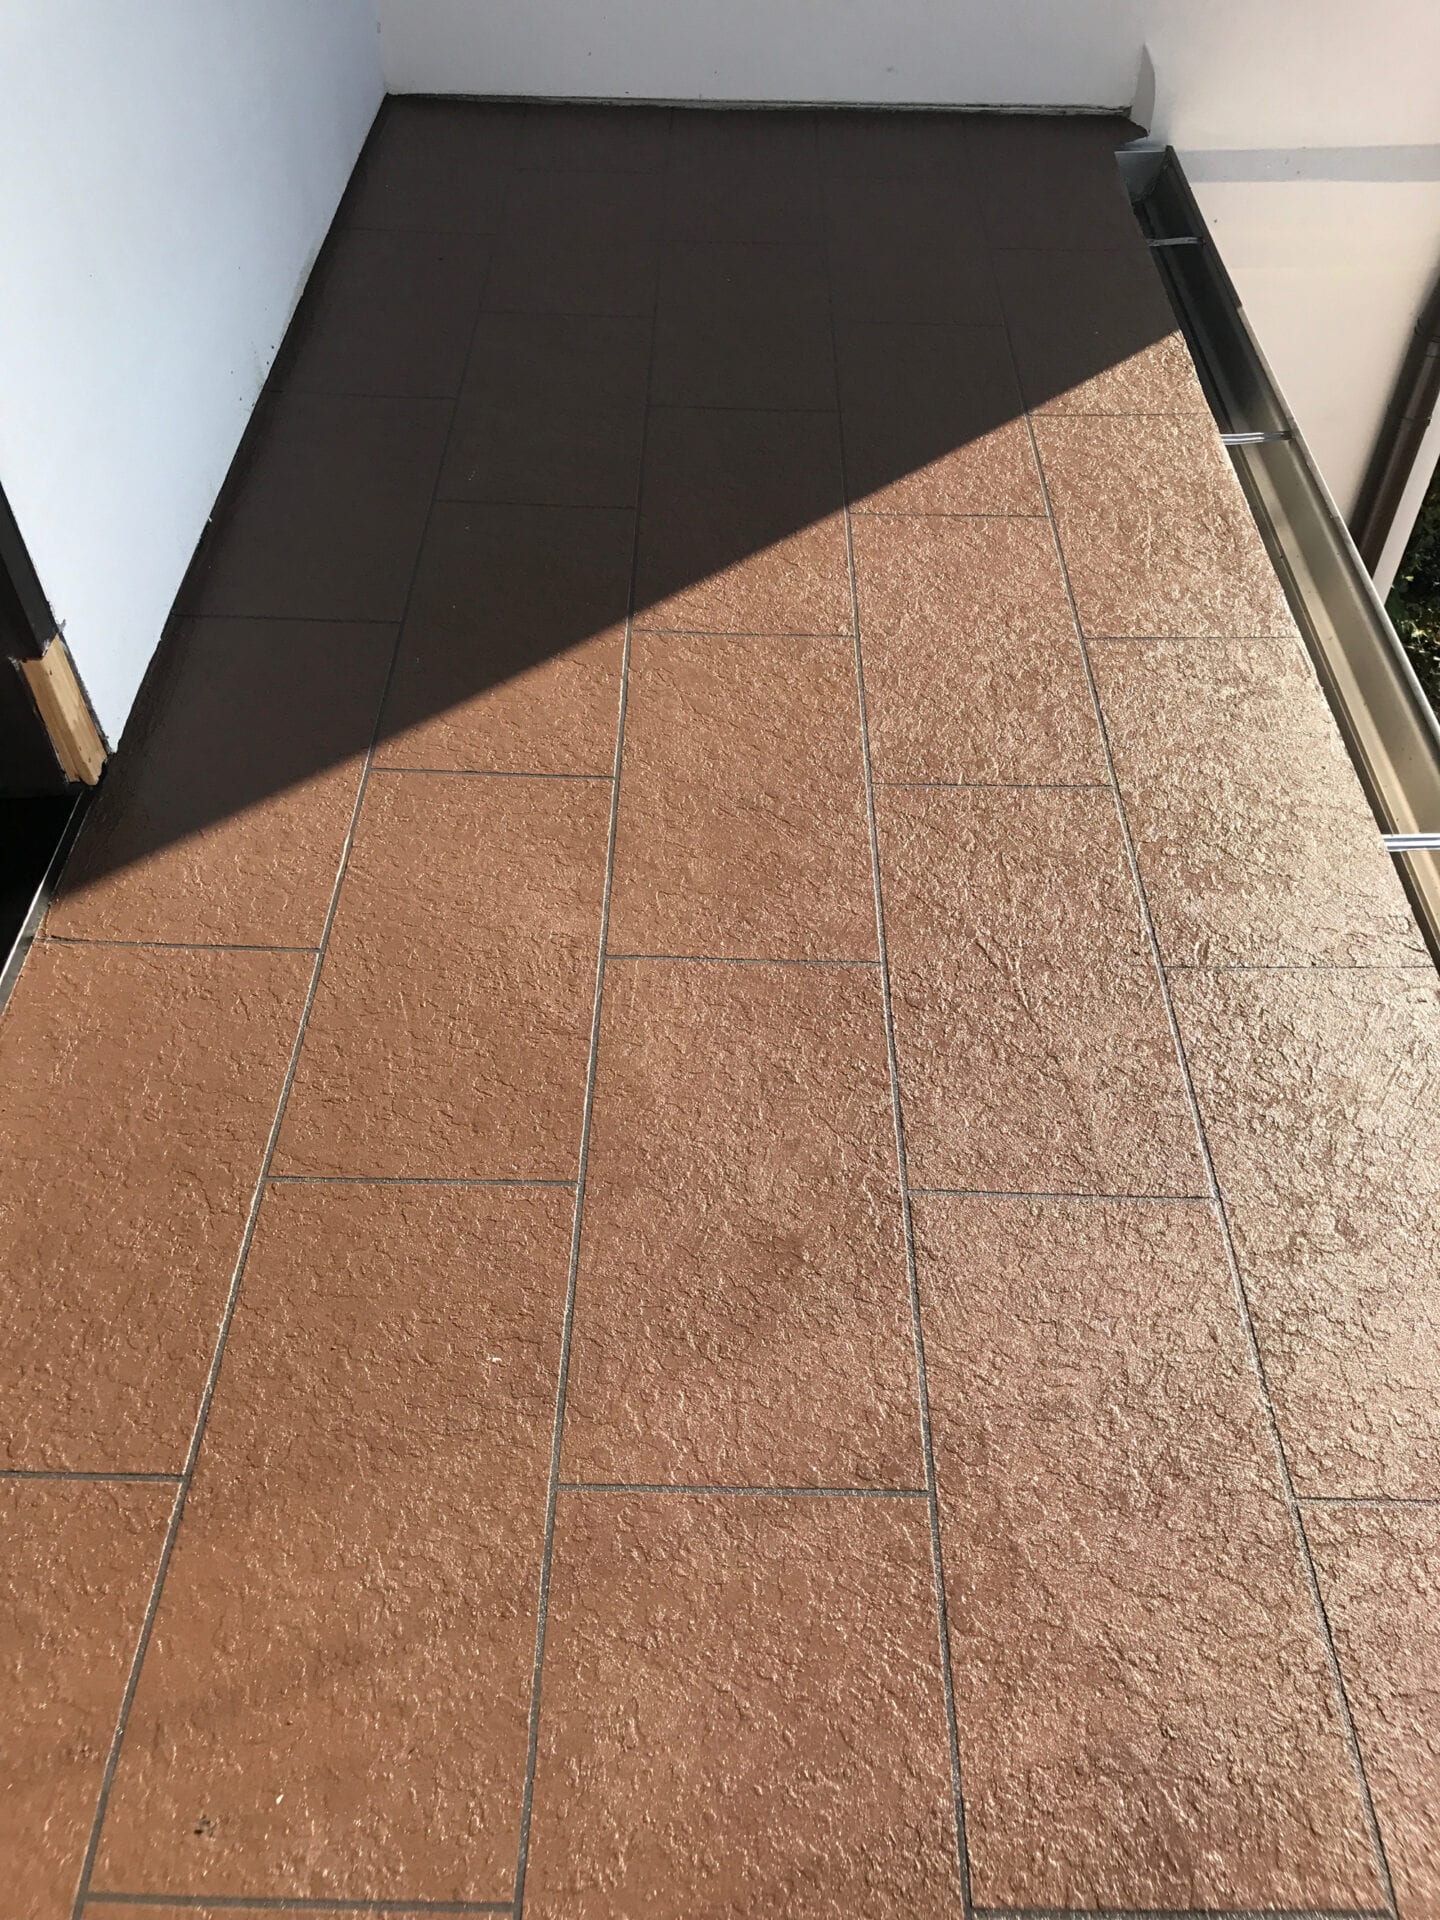 A tiled balcony flooring